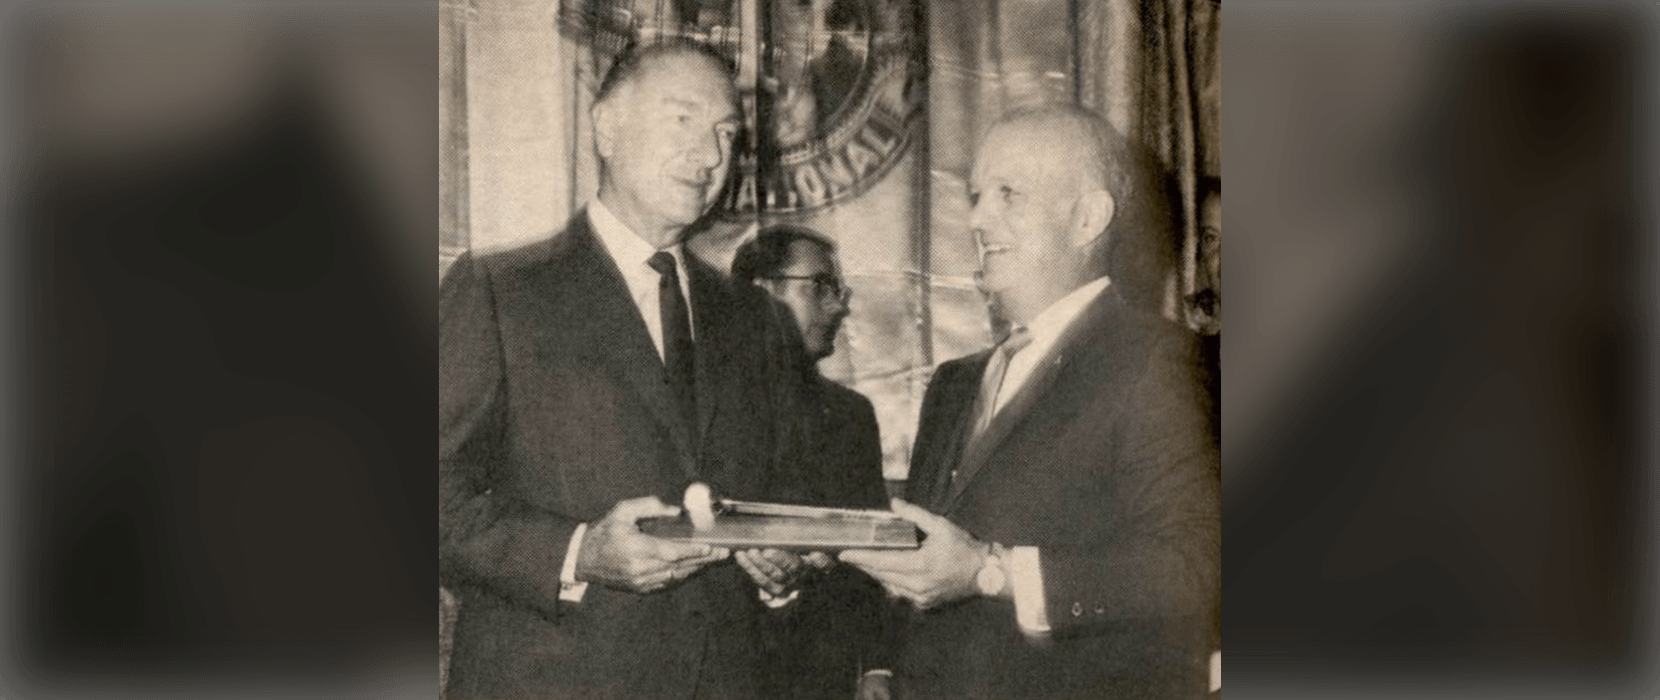 Two men holding award